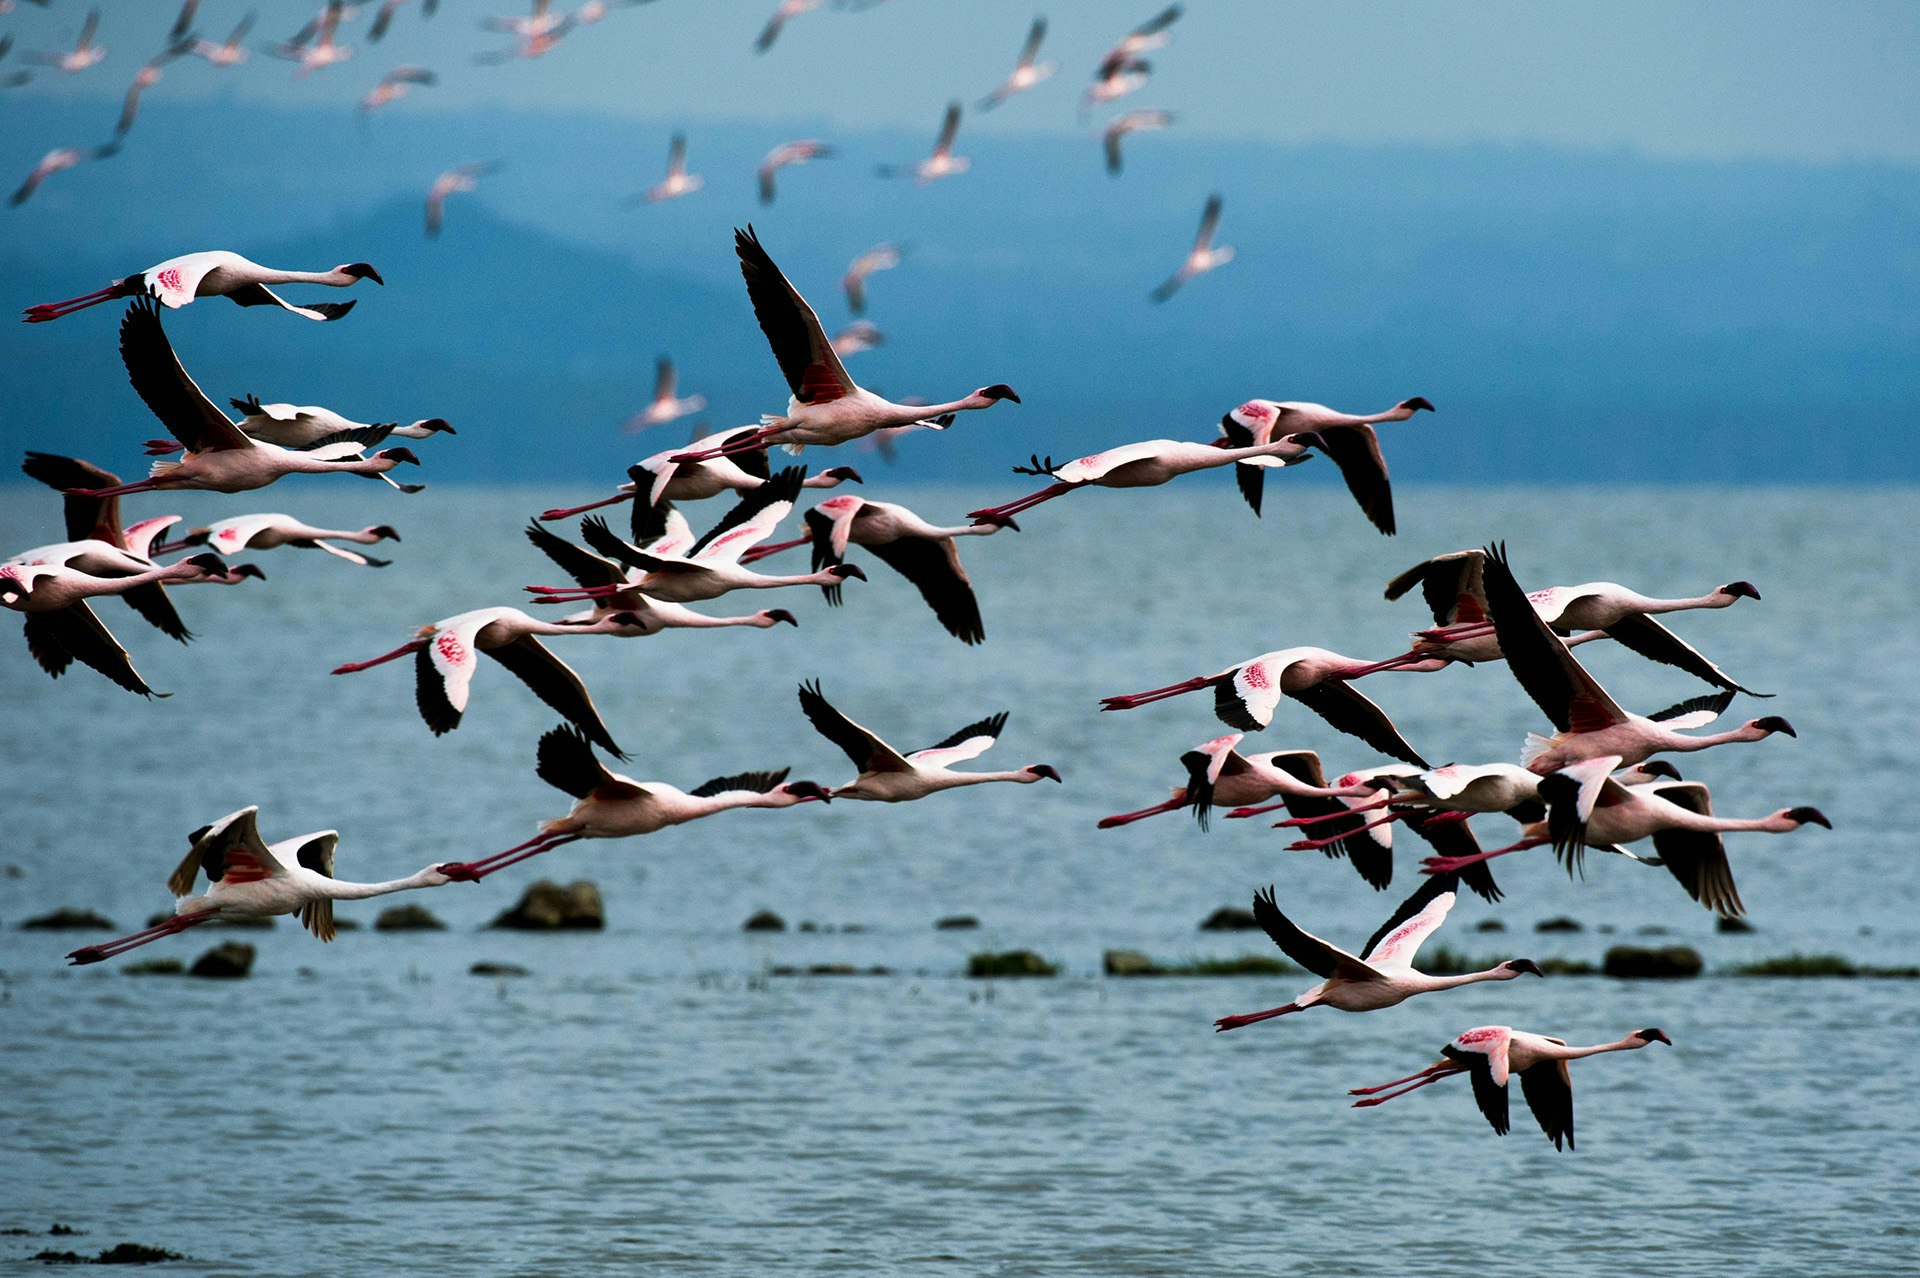 Flamingoes at flight